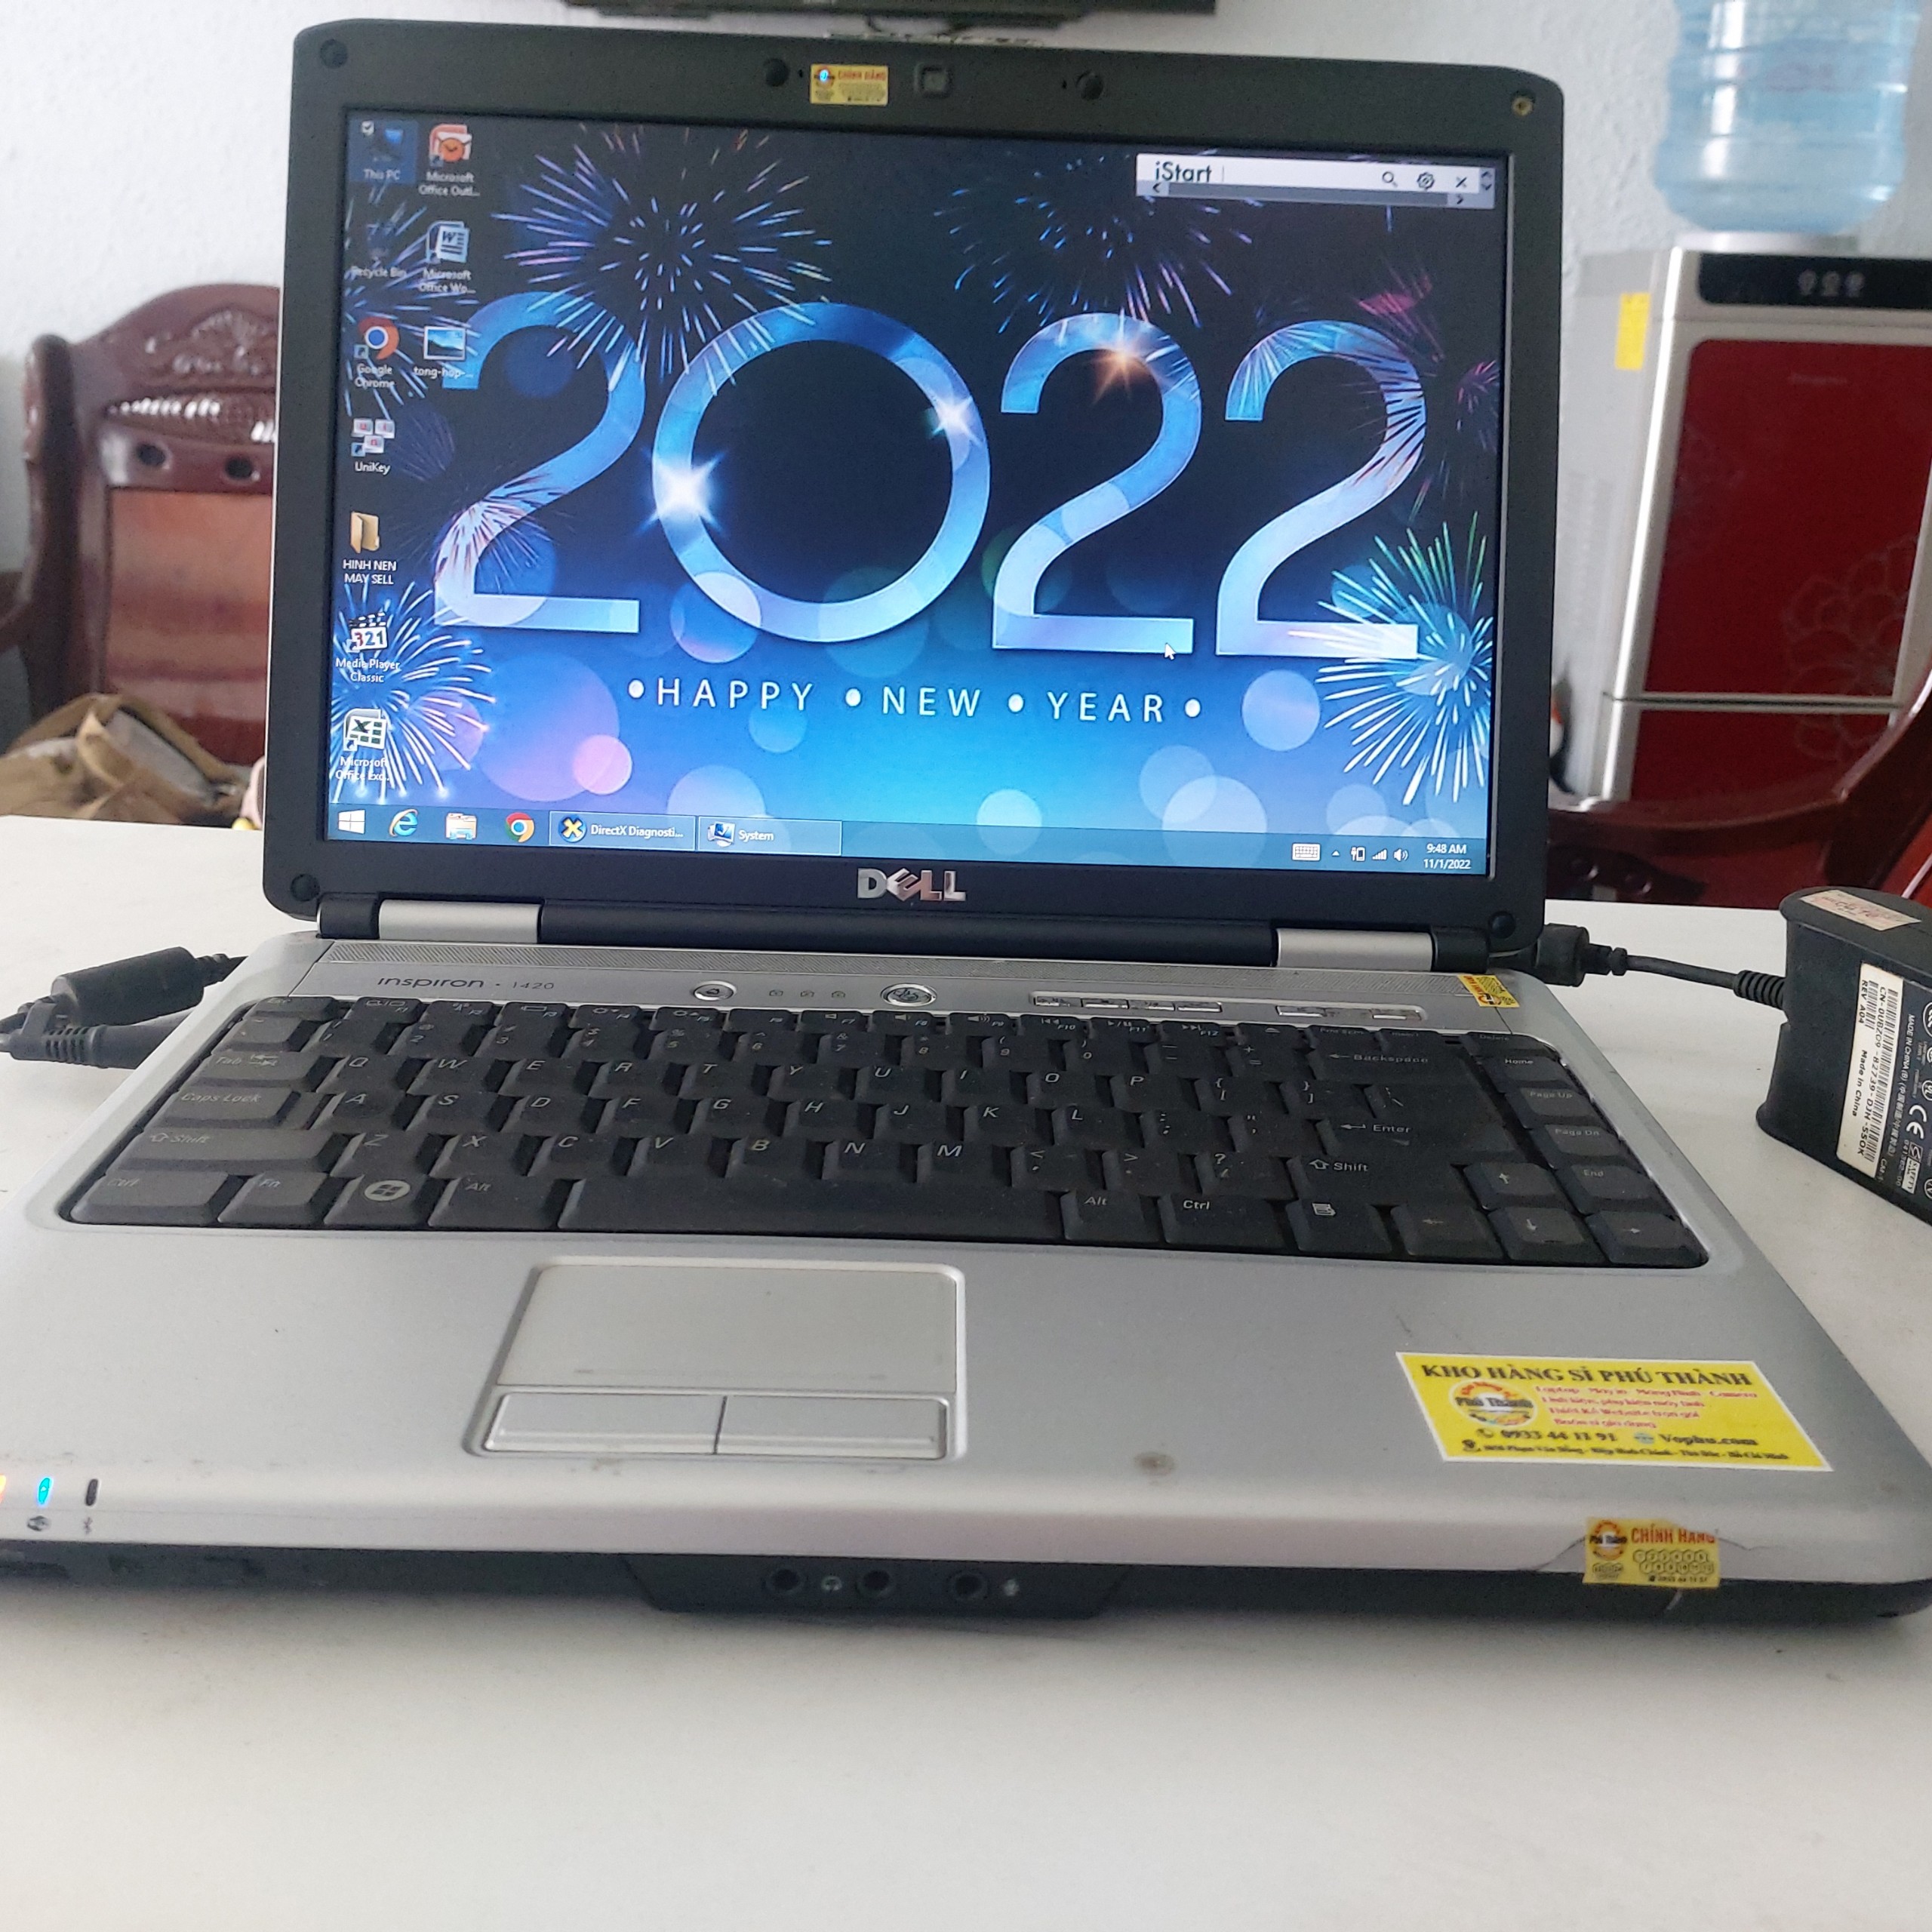 Laptop Dell 2022 inspiron 1420 ram 4Gb ổ cứng 120Gb Windows 8 bảo hành 7 tháng làm việc văn phòng, học tập ok